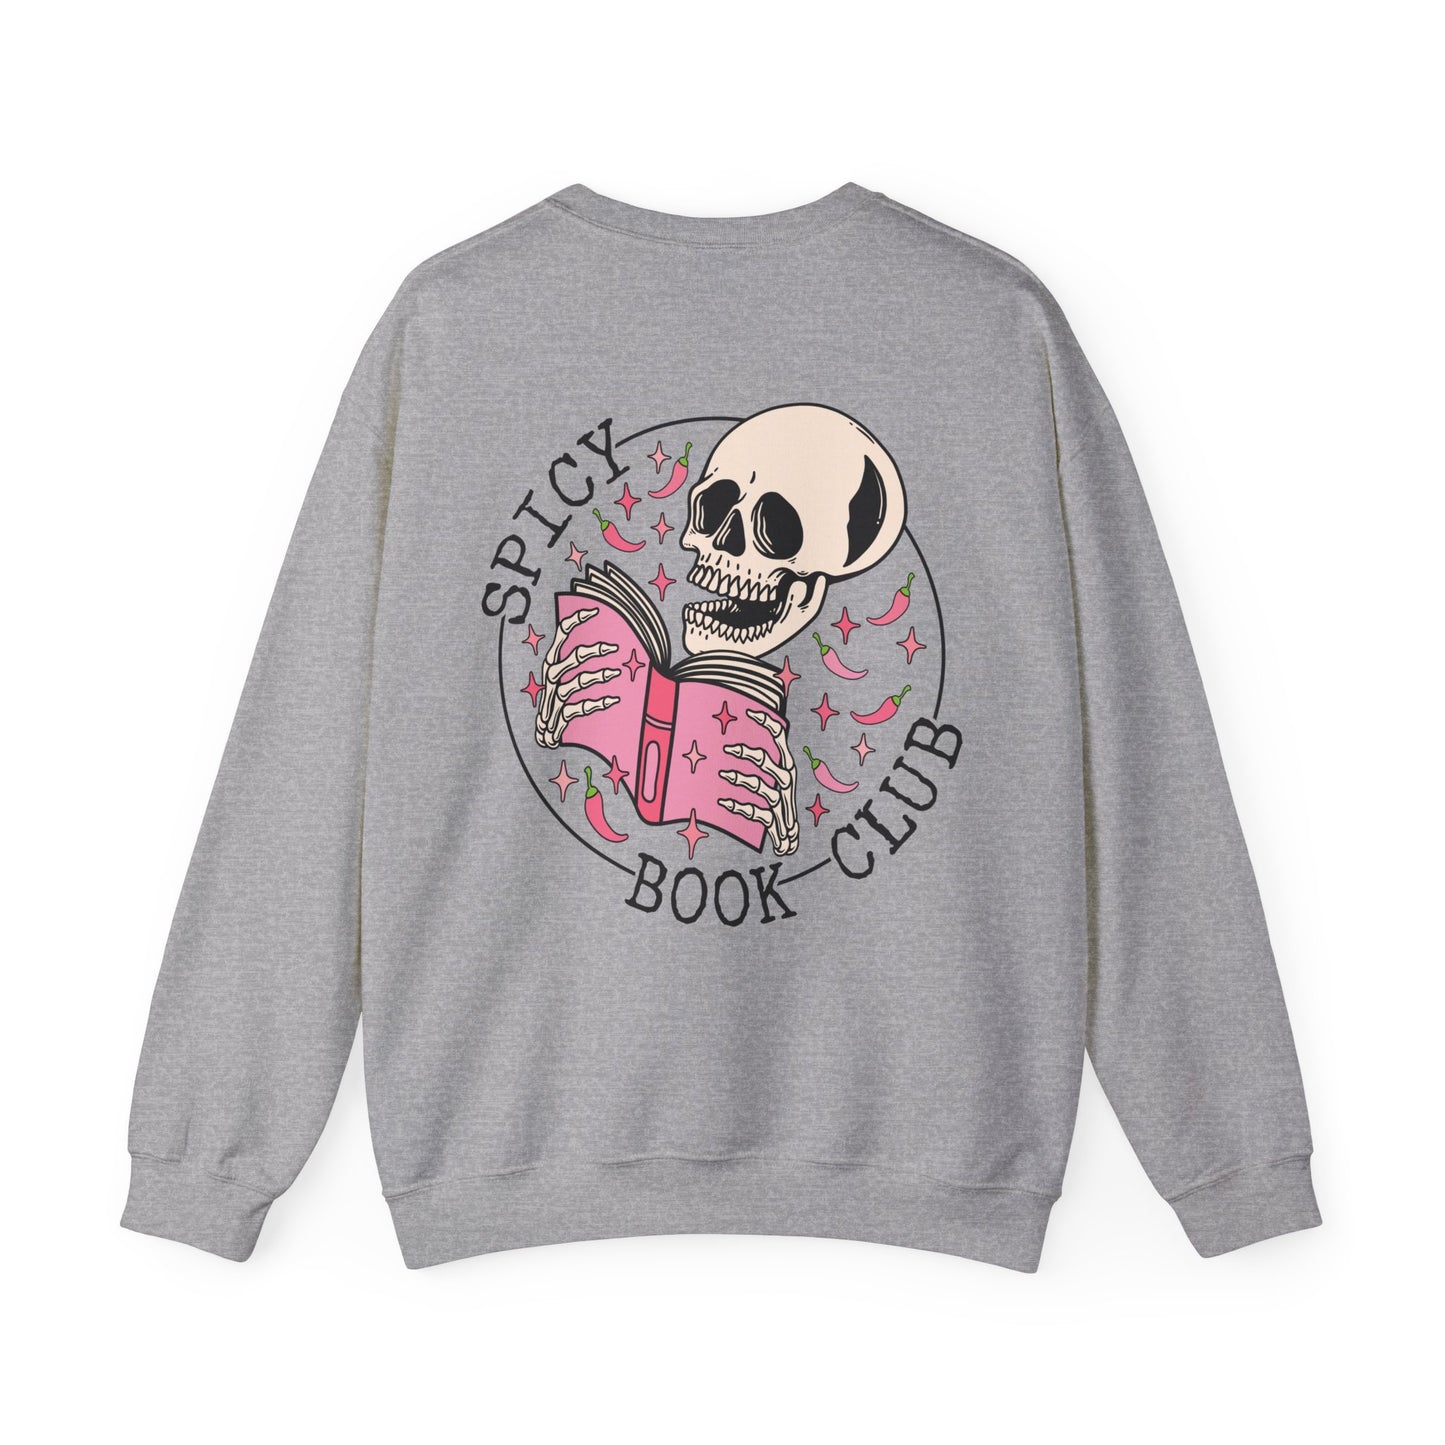 Spicy Book Club - Bookish - Crewneck Sweatshirt Pullover